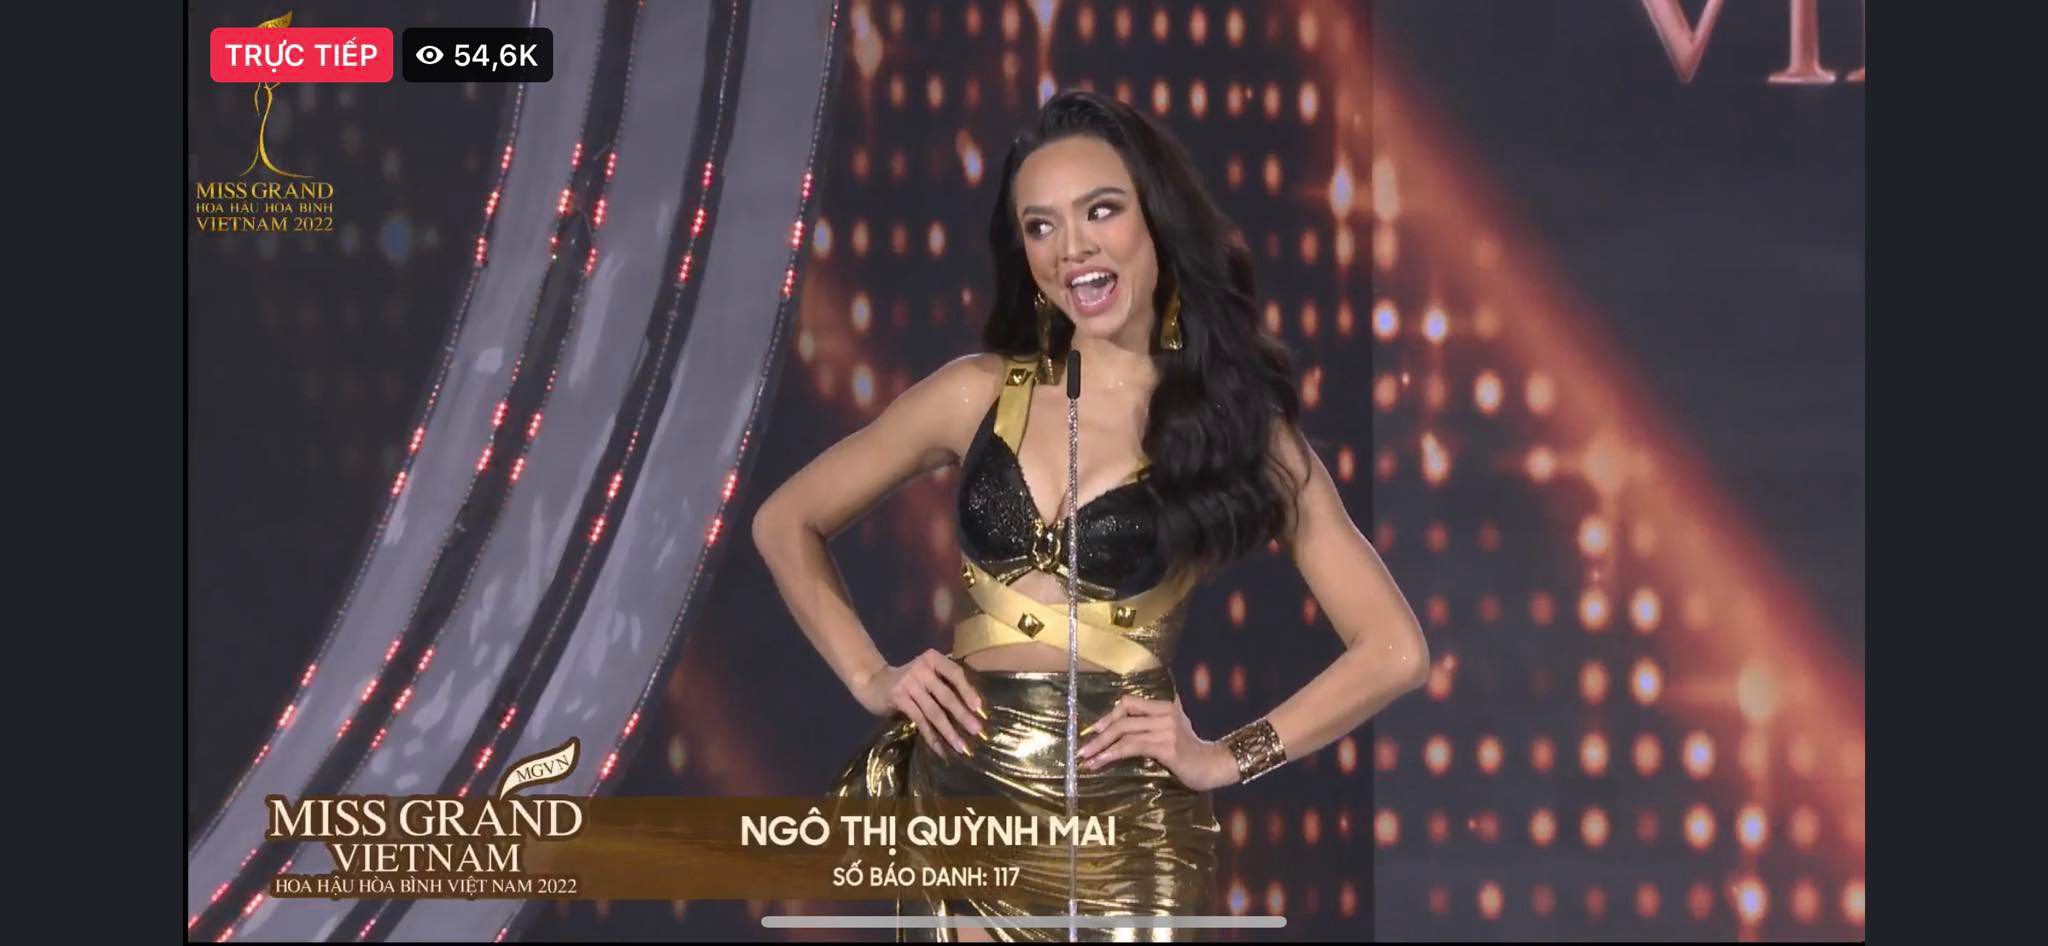 Trực tiếp chung kết Miss Grand Vietnam 2022: Tân Hoa hậu gọi tên Đoàn Thiên Ân - 35